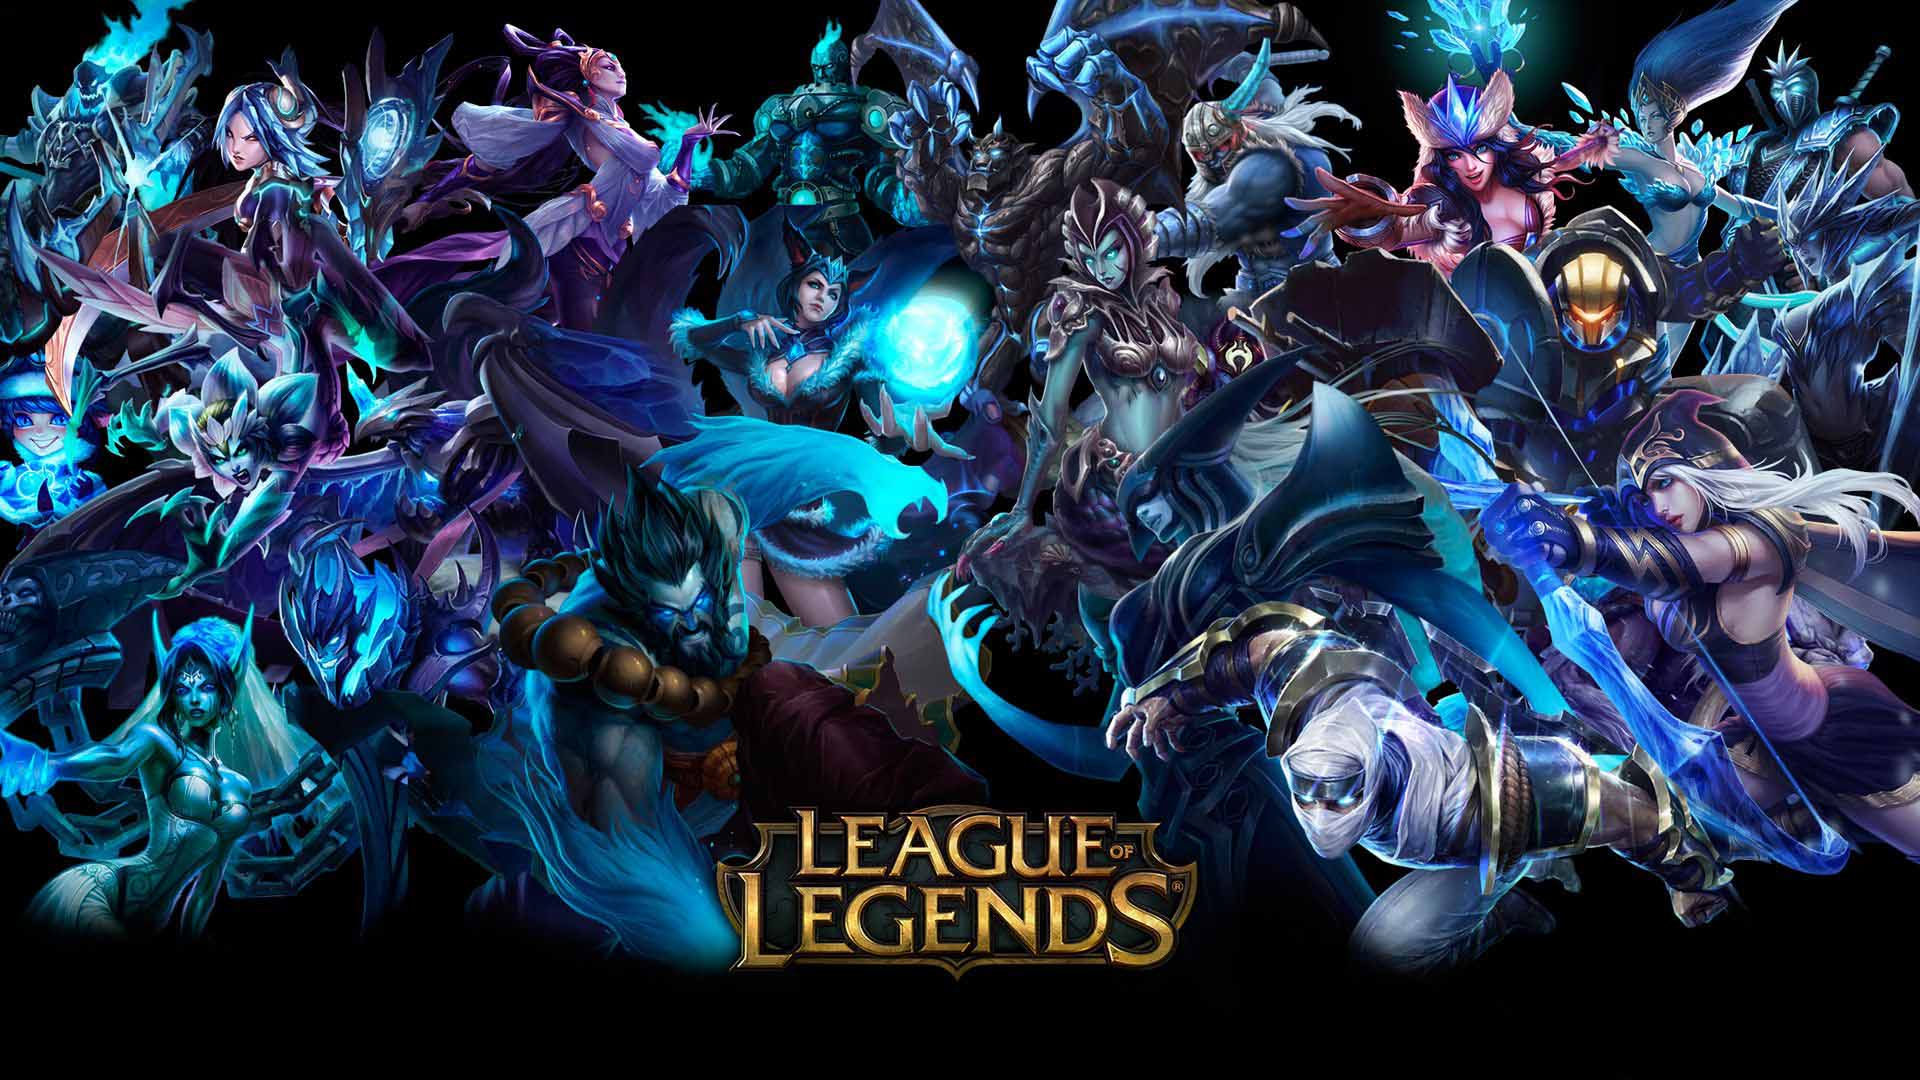 كيف يمكن استخدام خريطة League of Legends في صناعة عشرات الألعاب؟